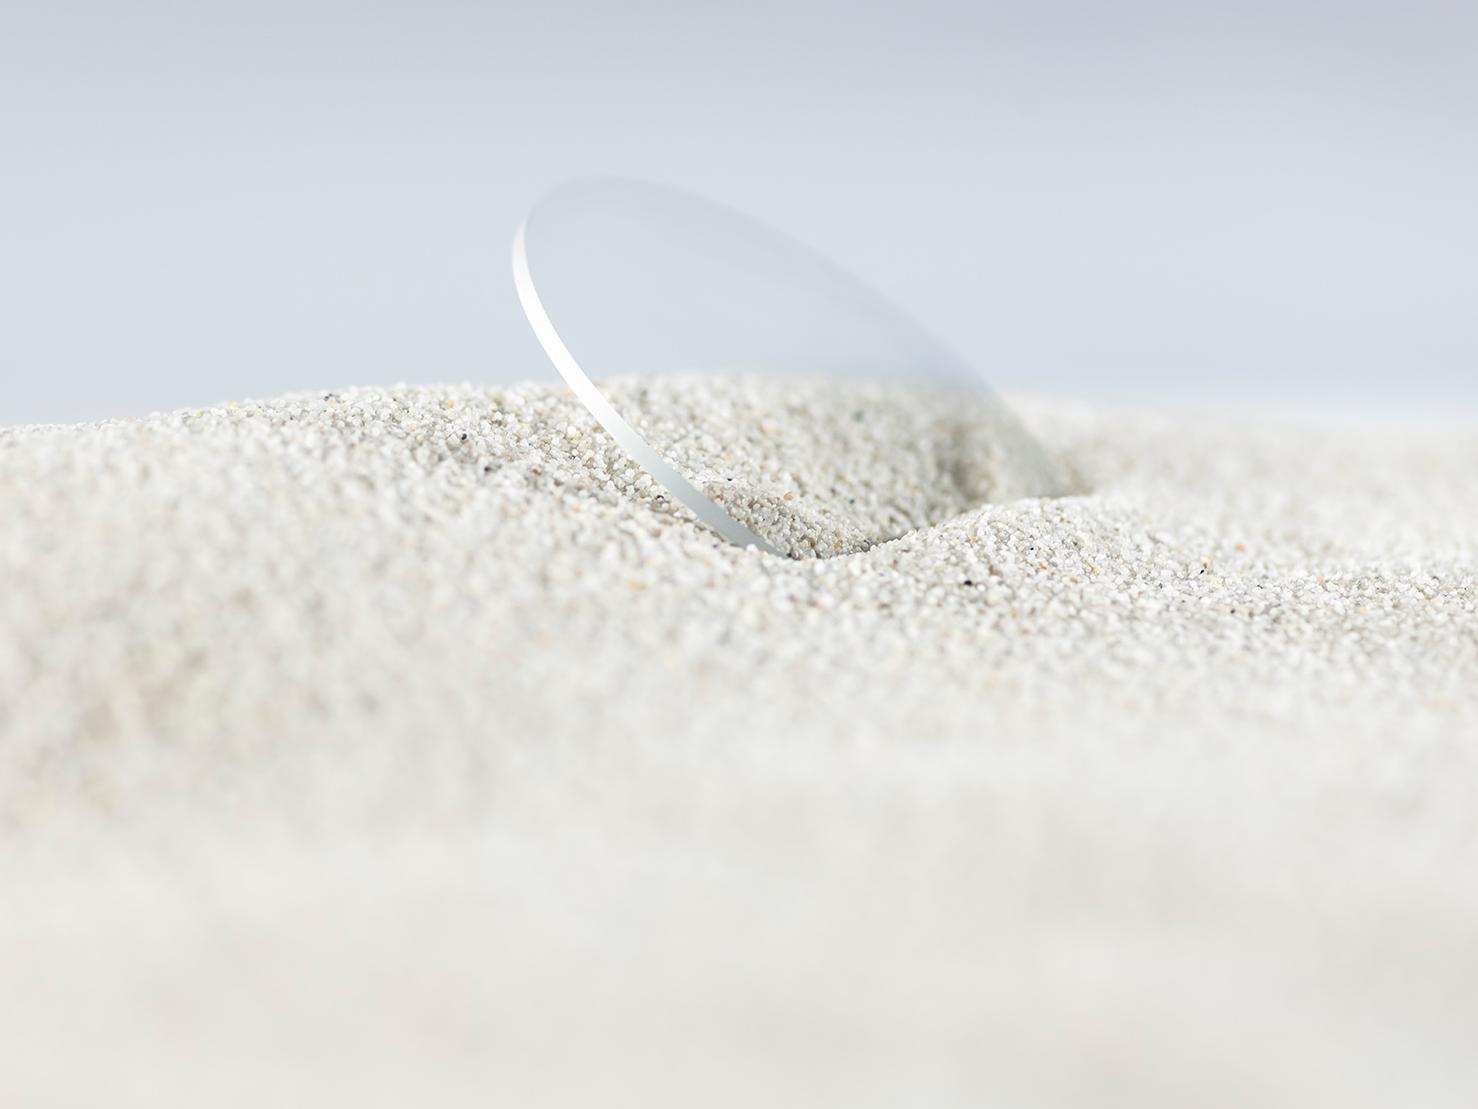 Een ZEISS brillenglas met een stevige coating is bedekt met ruw zand, maar blijft krasvrij.